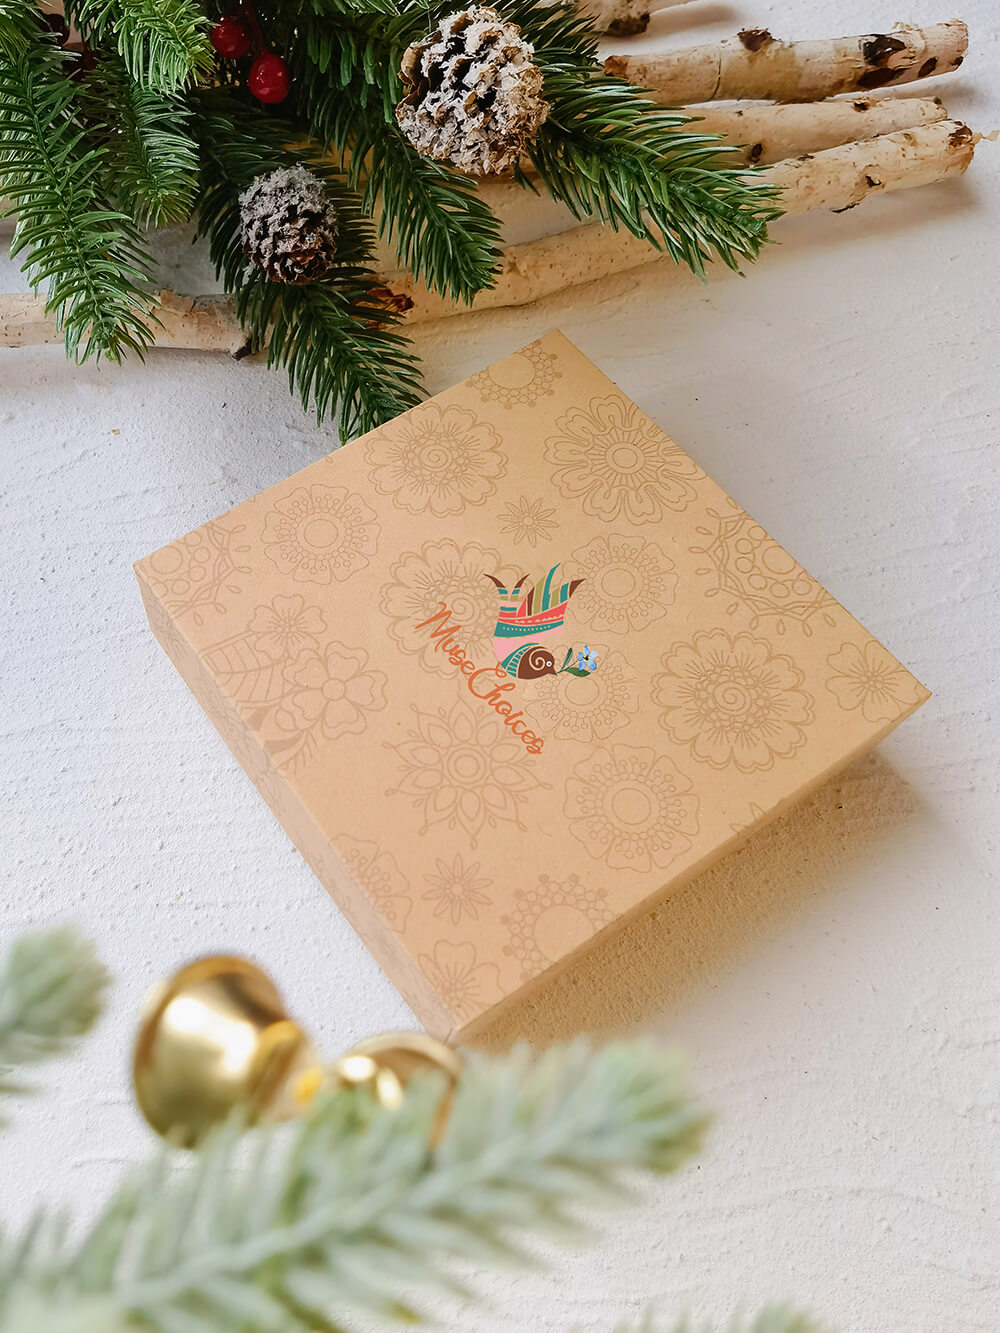 Pearl Star Letter juletræ øreringe